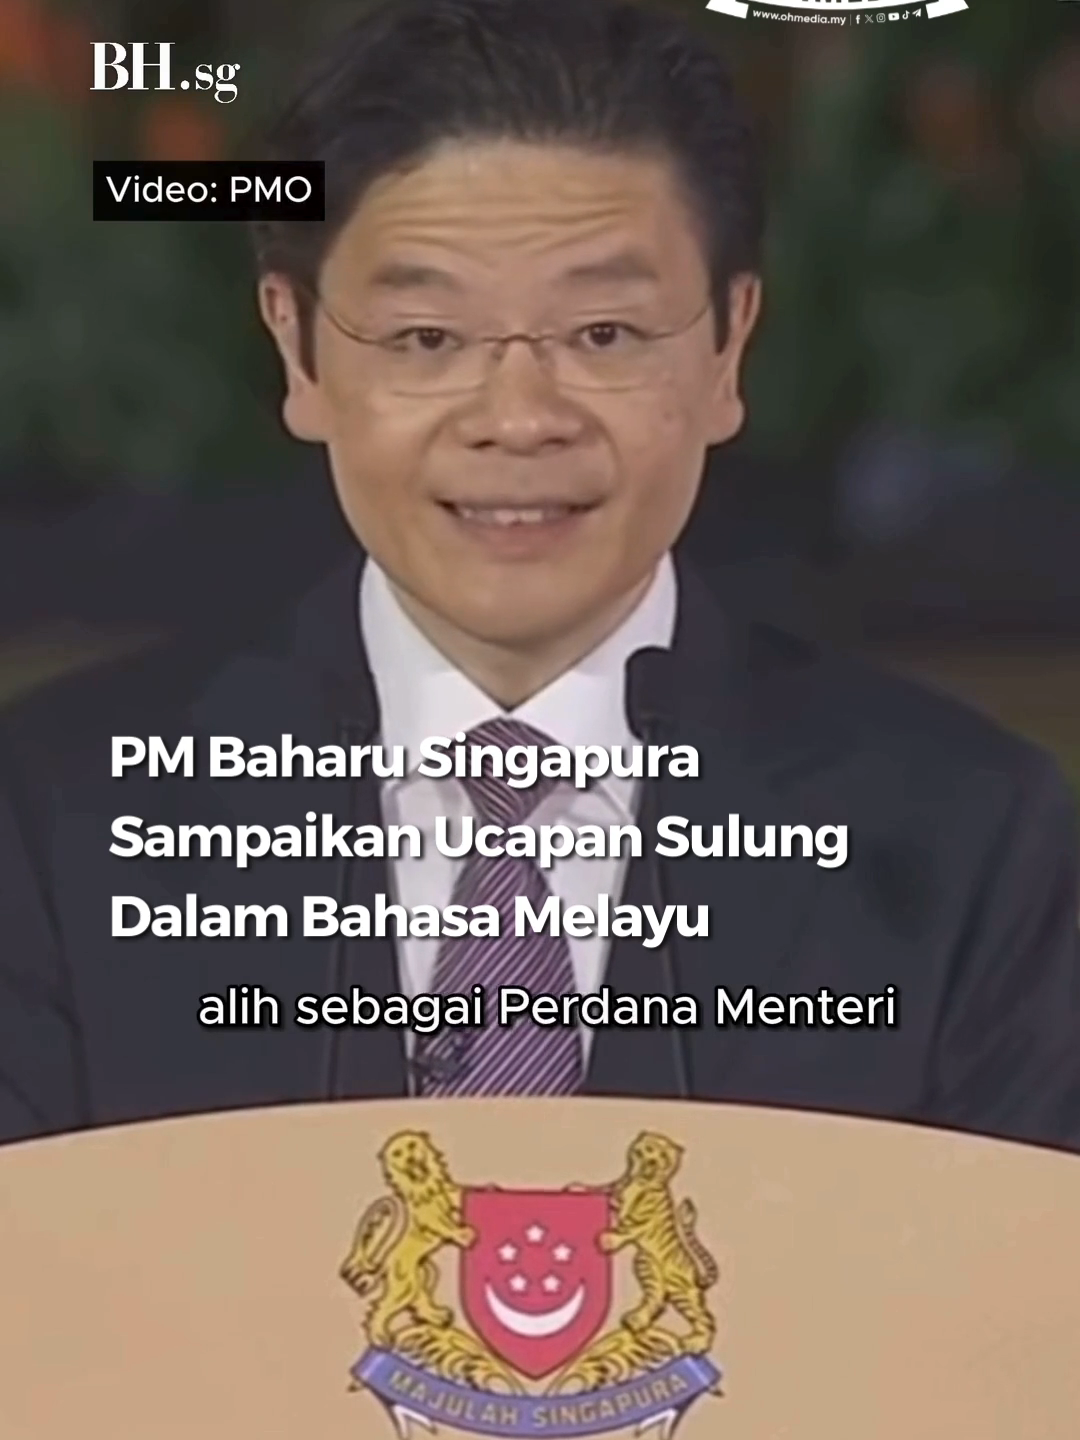 Perdana Menteri baharu Singapura, Lawrence Wong sampaikan ucapan sulungnya sebagai PM dalam bahasa melayu selepas mengangkat sumpah di Istana Singapura semalam. Kredit: BH.sg #ohmedia #mf